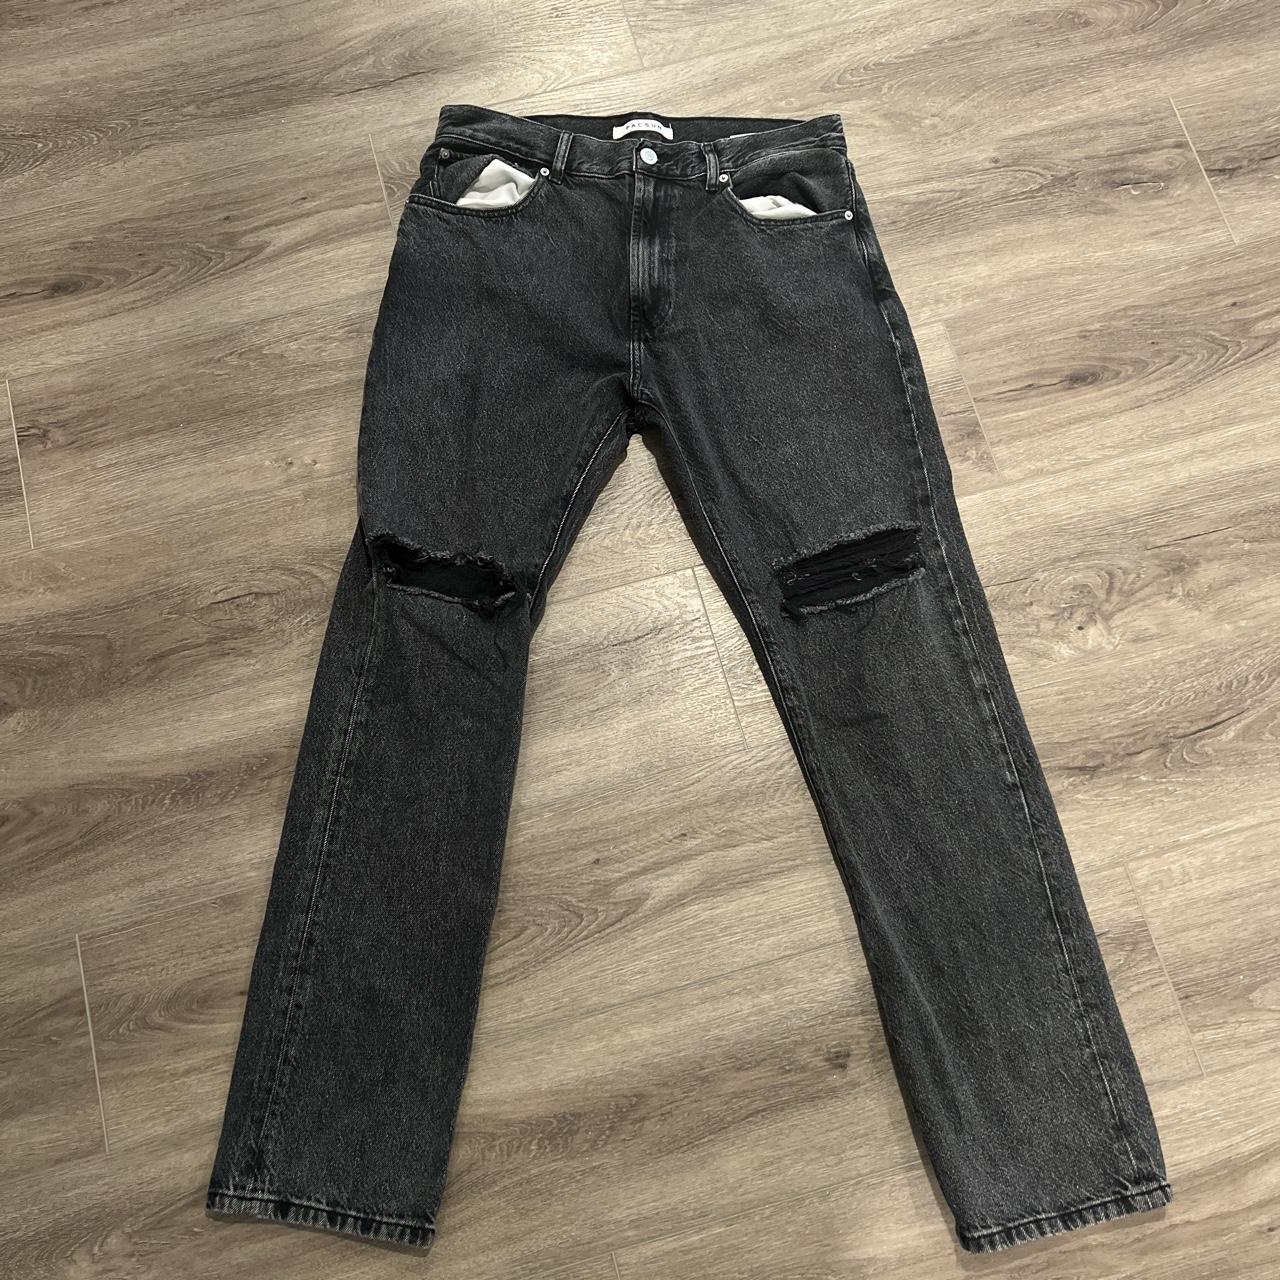 Black washed denim jeans Custom distressing on denim... - Depop